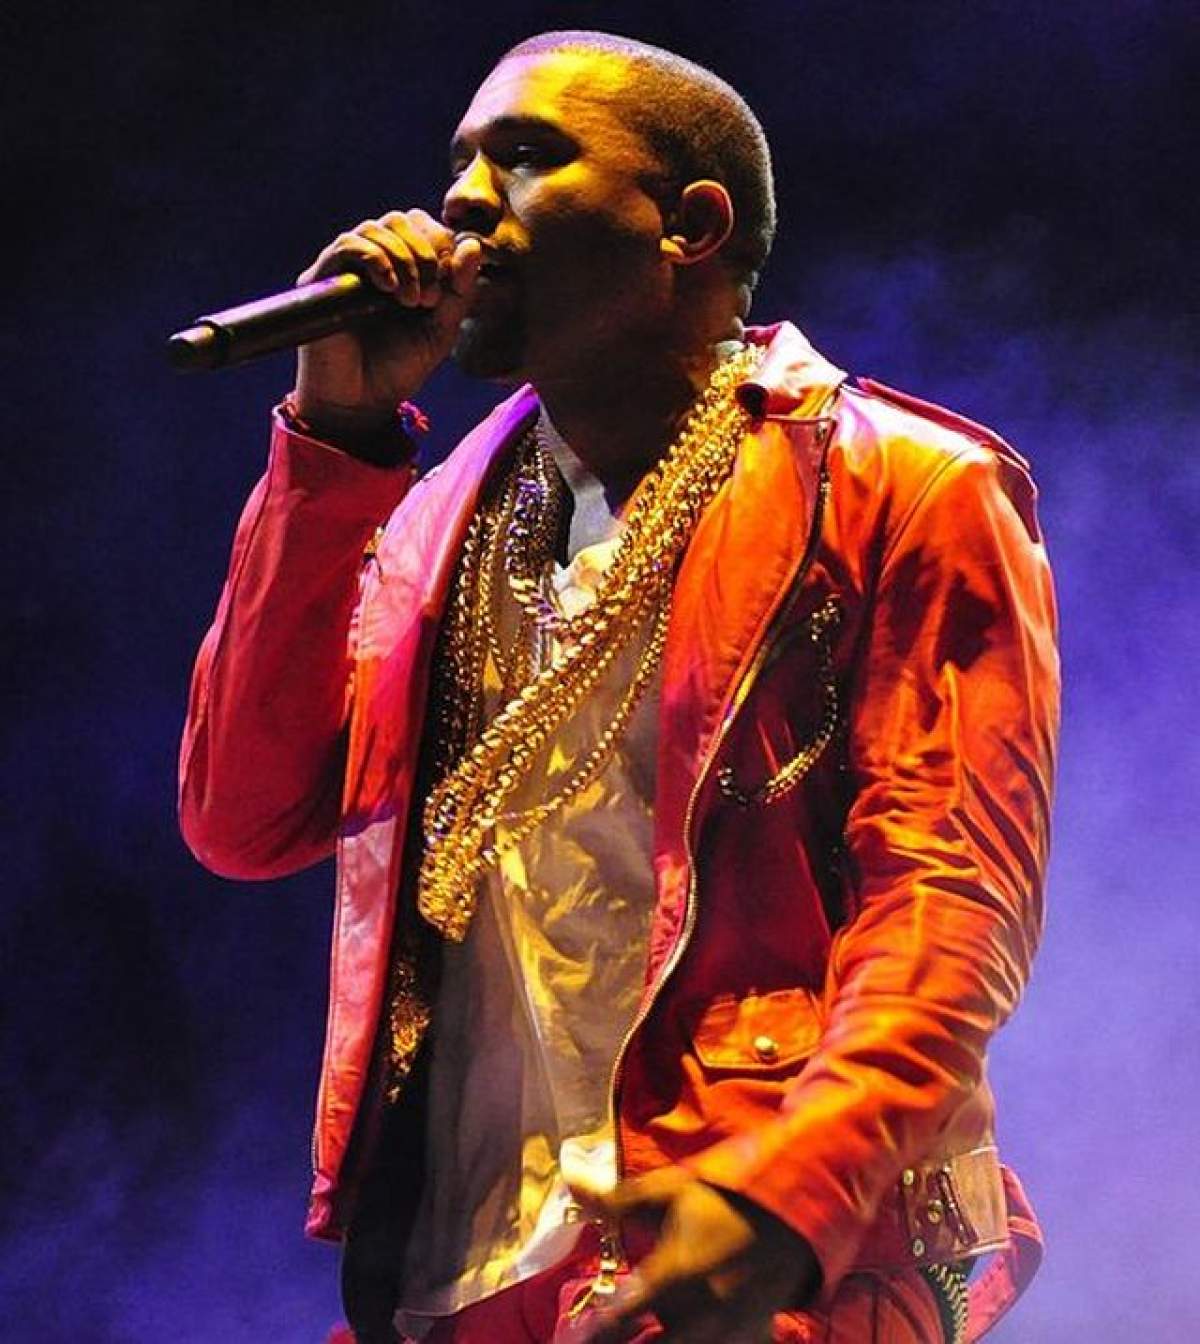 VIDEO / Moment penibil la concertul lui Kanye West! A refuzat să continue recitalul pentru că doi fani cu dizabilităţi nu s-au ridicat în picioare